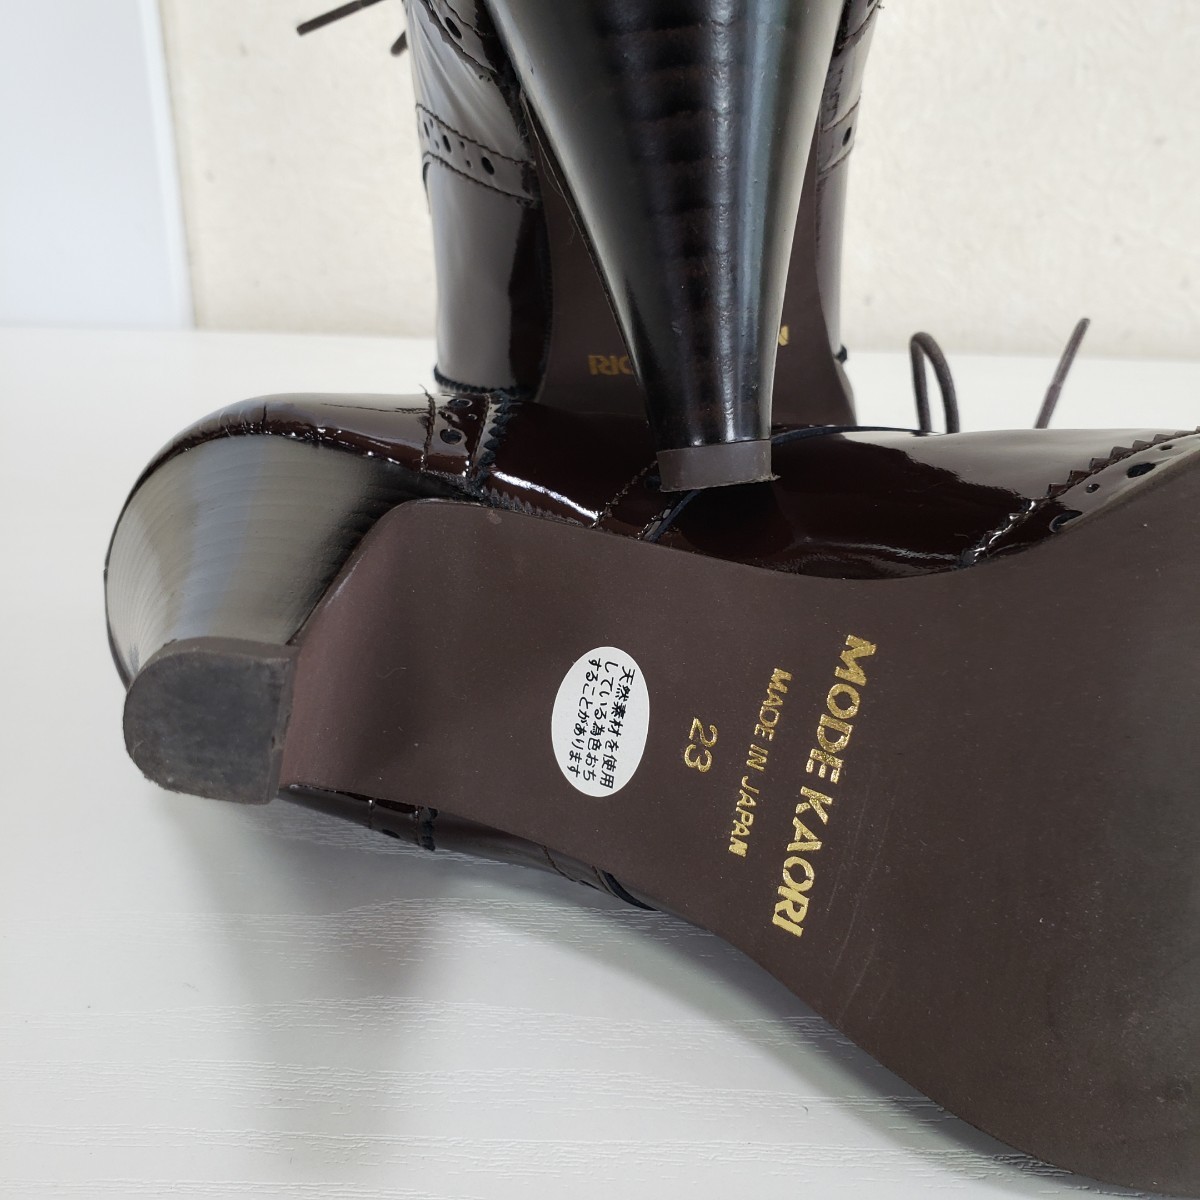  finest quality goods *MODE KAORI mode kaolipa tent leather enamel race up pumps bootie - shoes (23.0cm) tea color Brown 